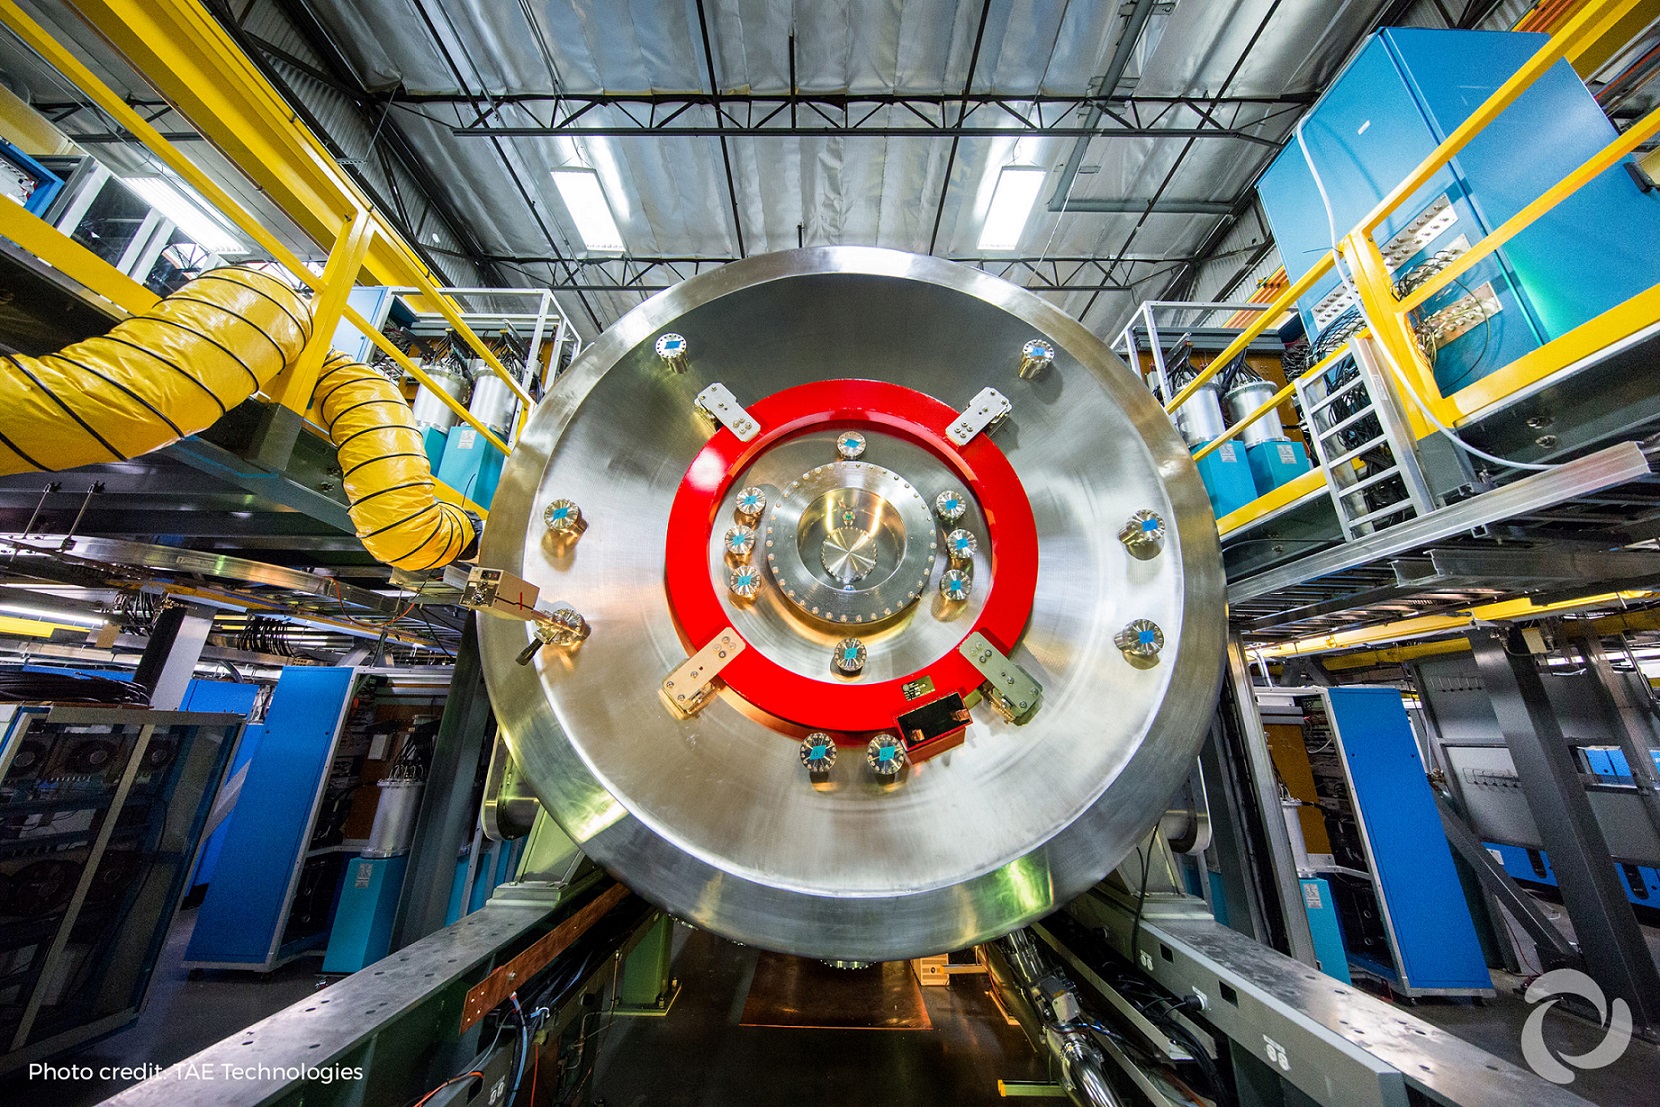 Már 2030-ra megérkezhet az első kereskedelmi fúziós reaktor - állítja egy kaliforniai cég